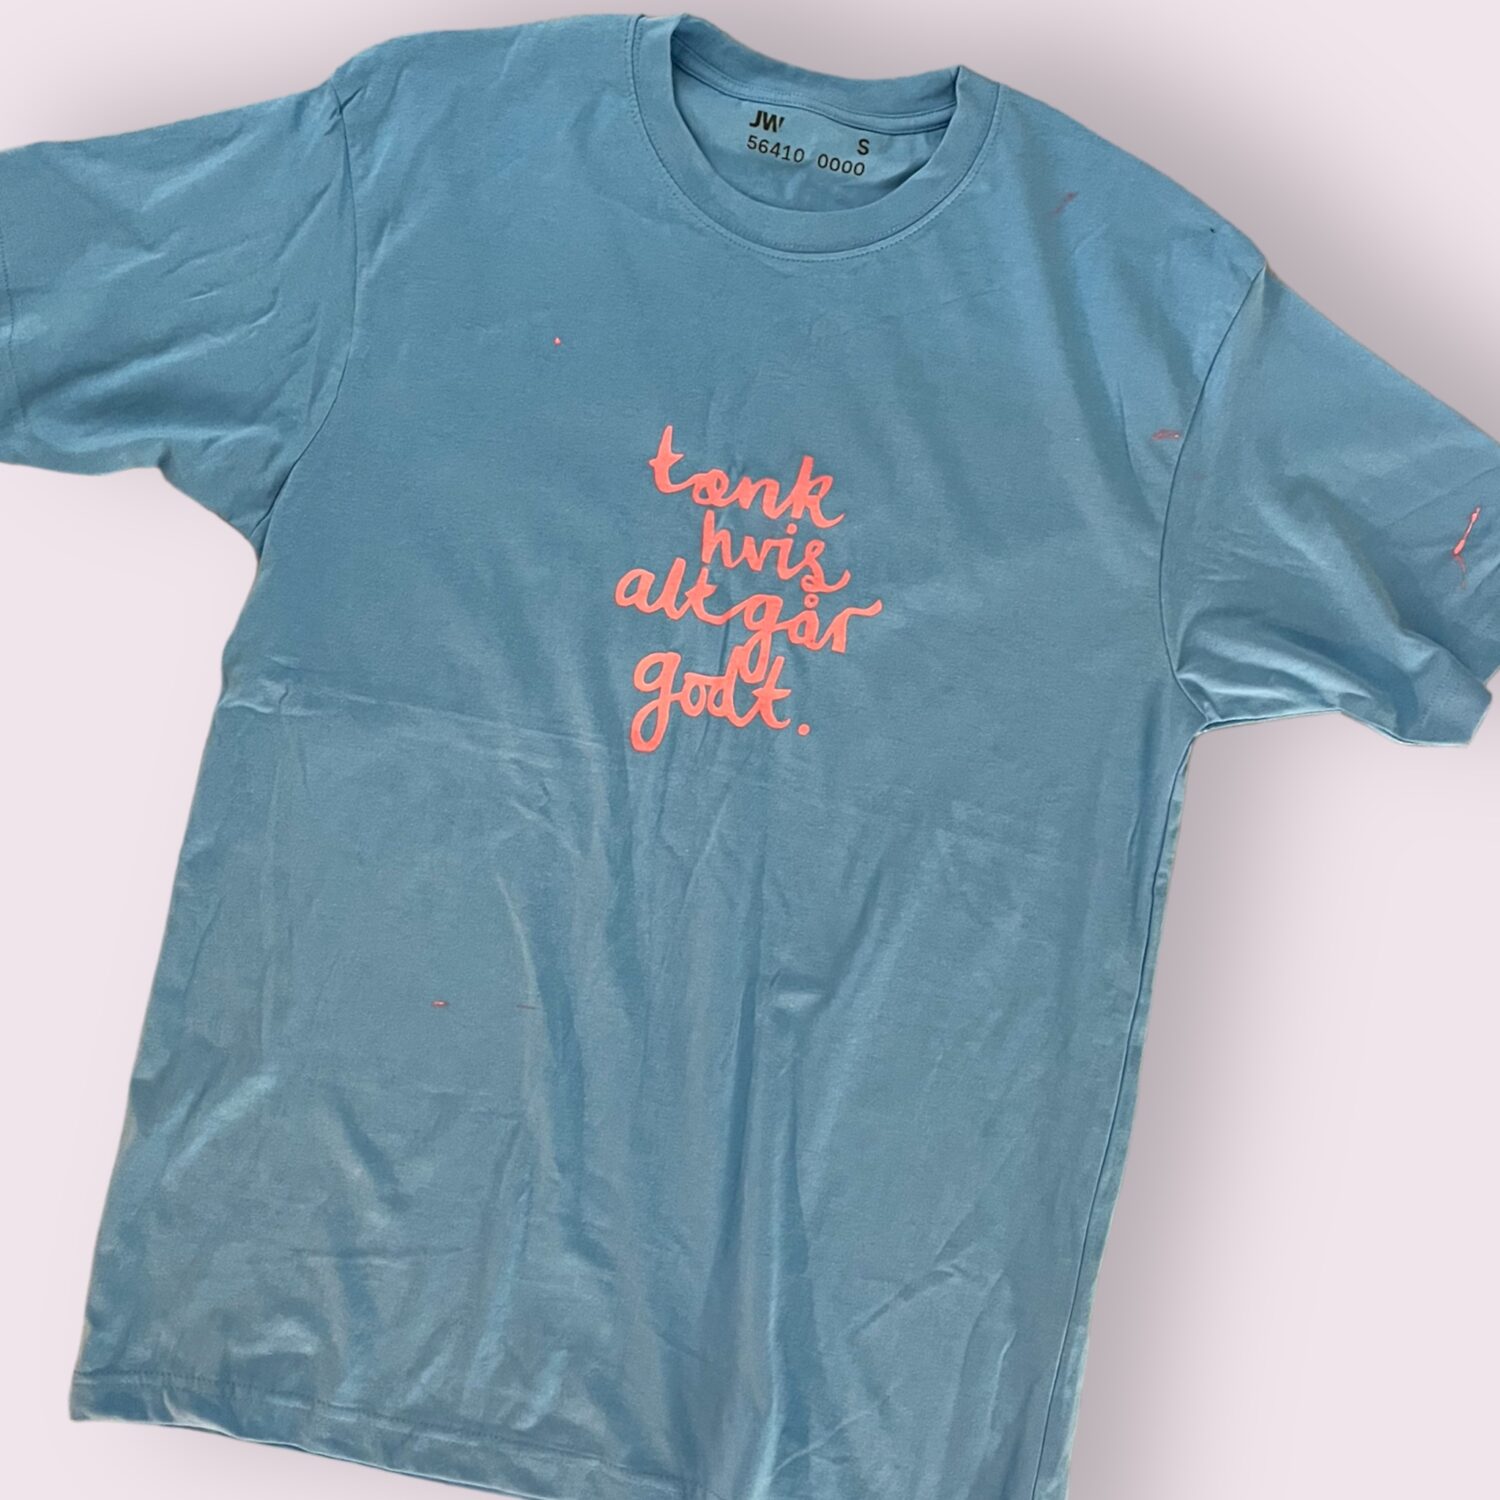 T-shirt med teksten “tænk hvis alt går godt” trykt af Lisa Strøander